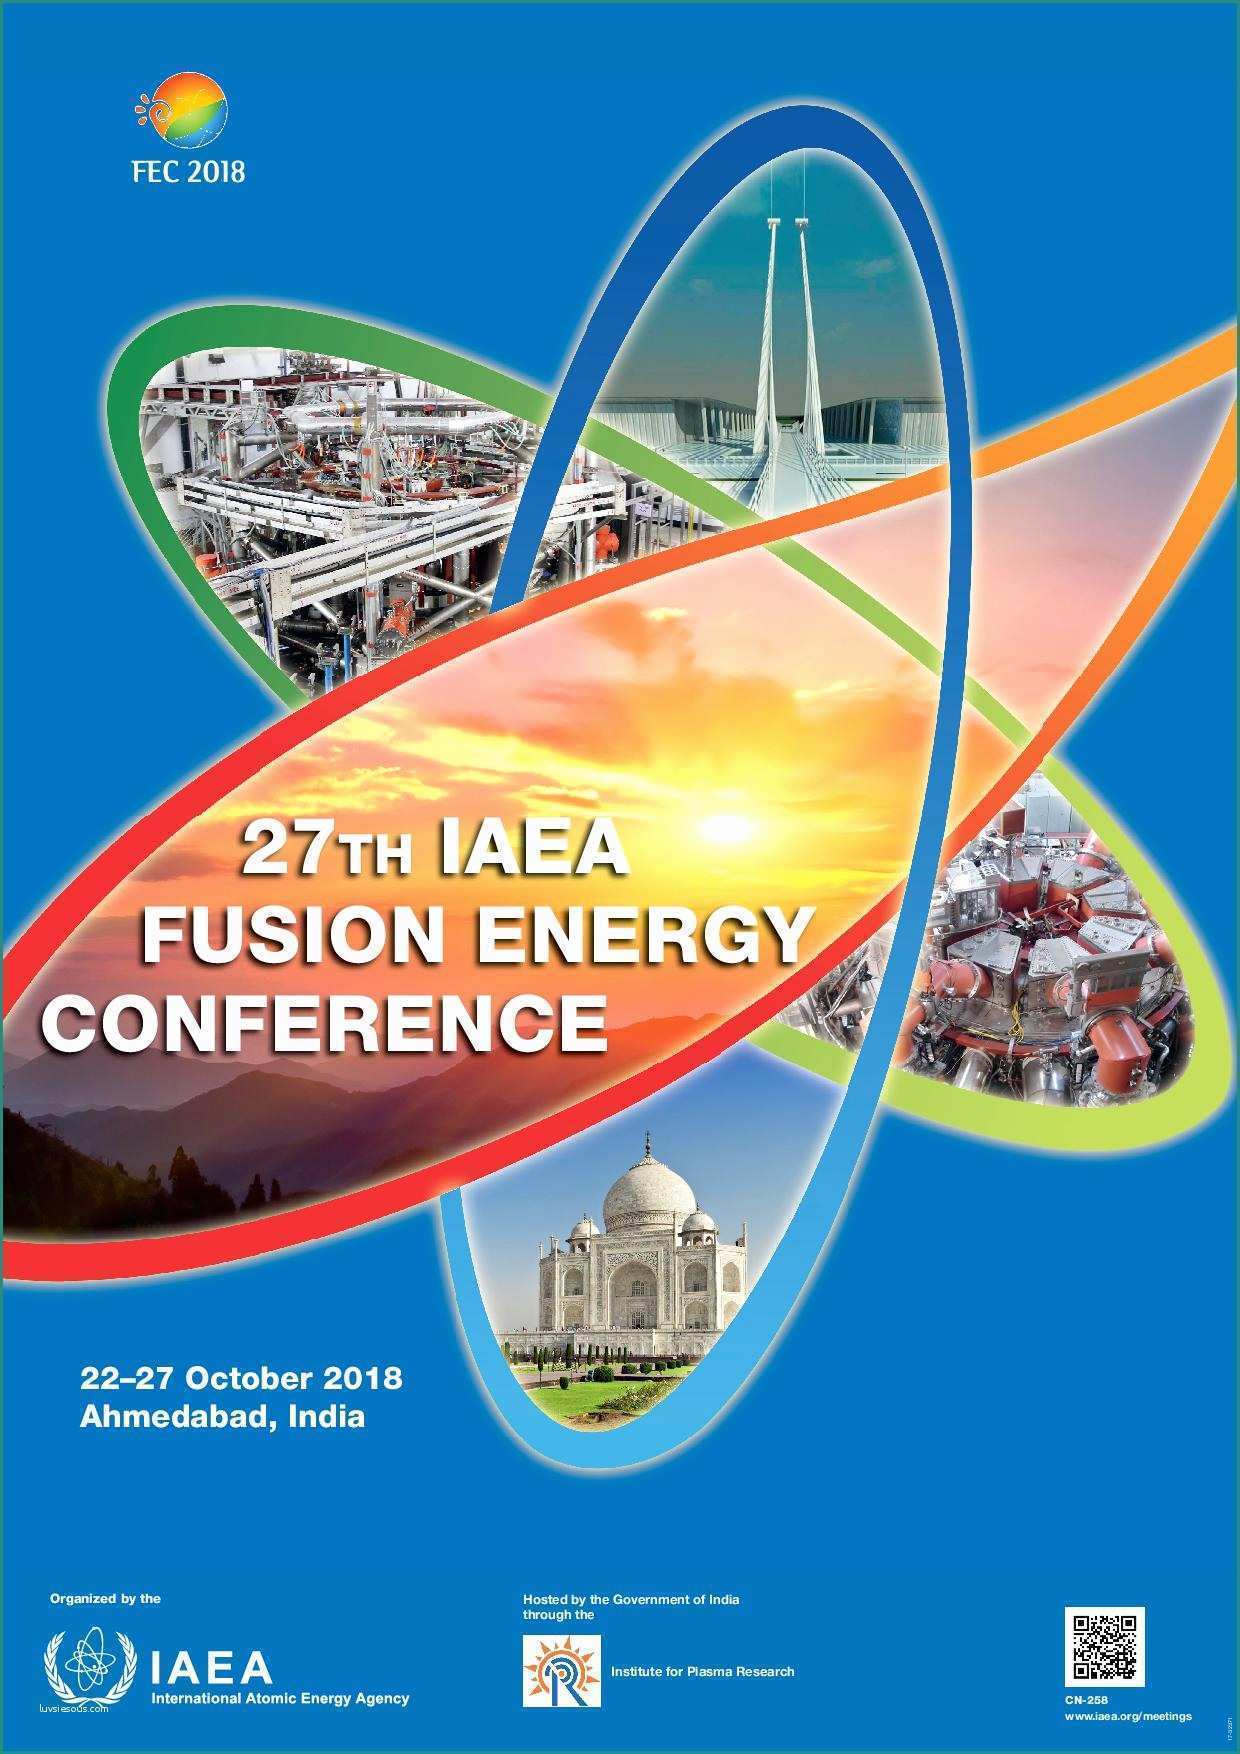 Ssml Gregorio Vii E 27th Iaea Fusion Energy Conference Iaea Cn 258 22 27 October 2018